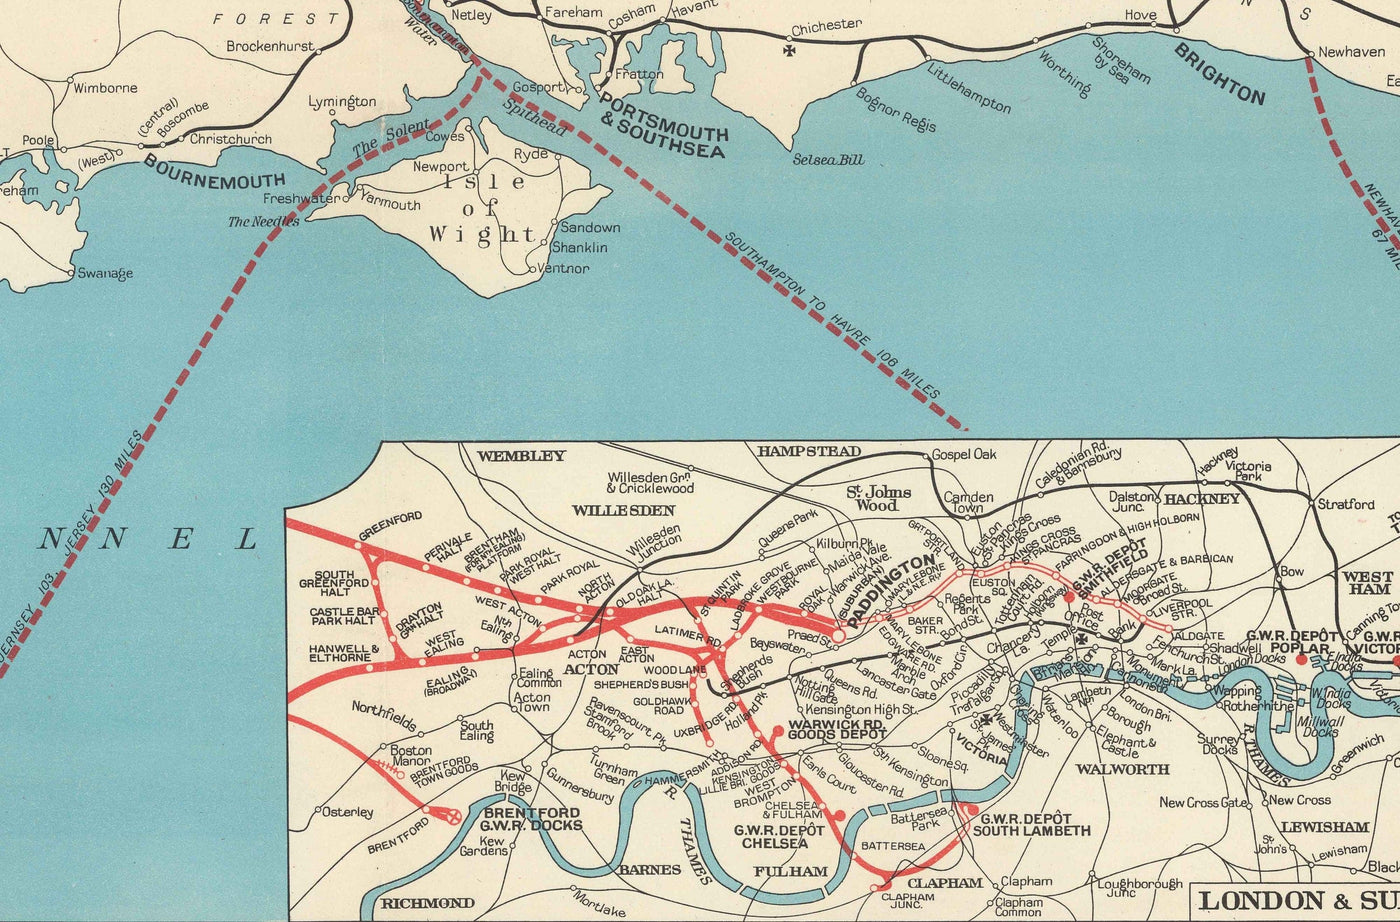 Antiguo mapa del Great Western Railway, 1950 - Recortes previos a Beeching GWR - Líneas principales, Gales del Sur, West Country, Paddington